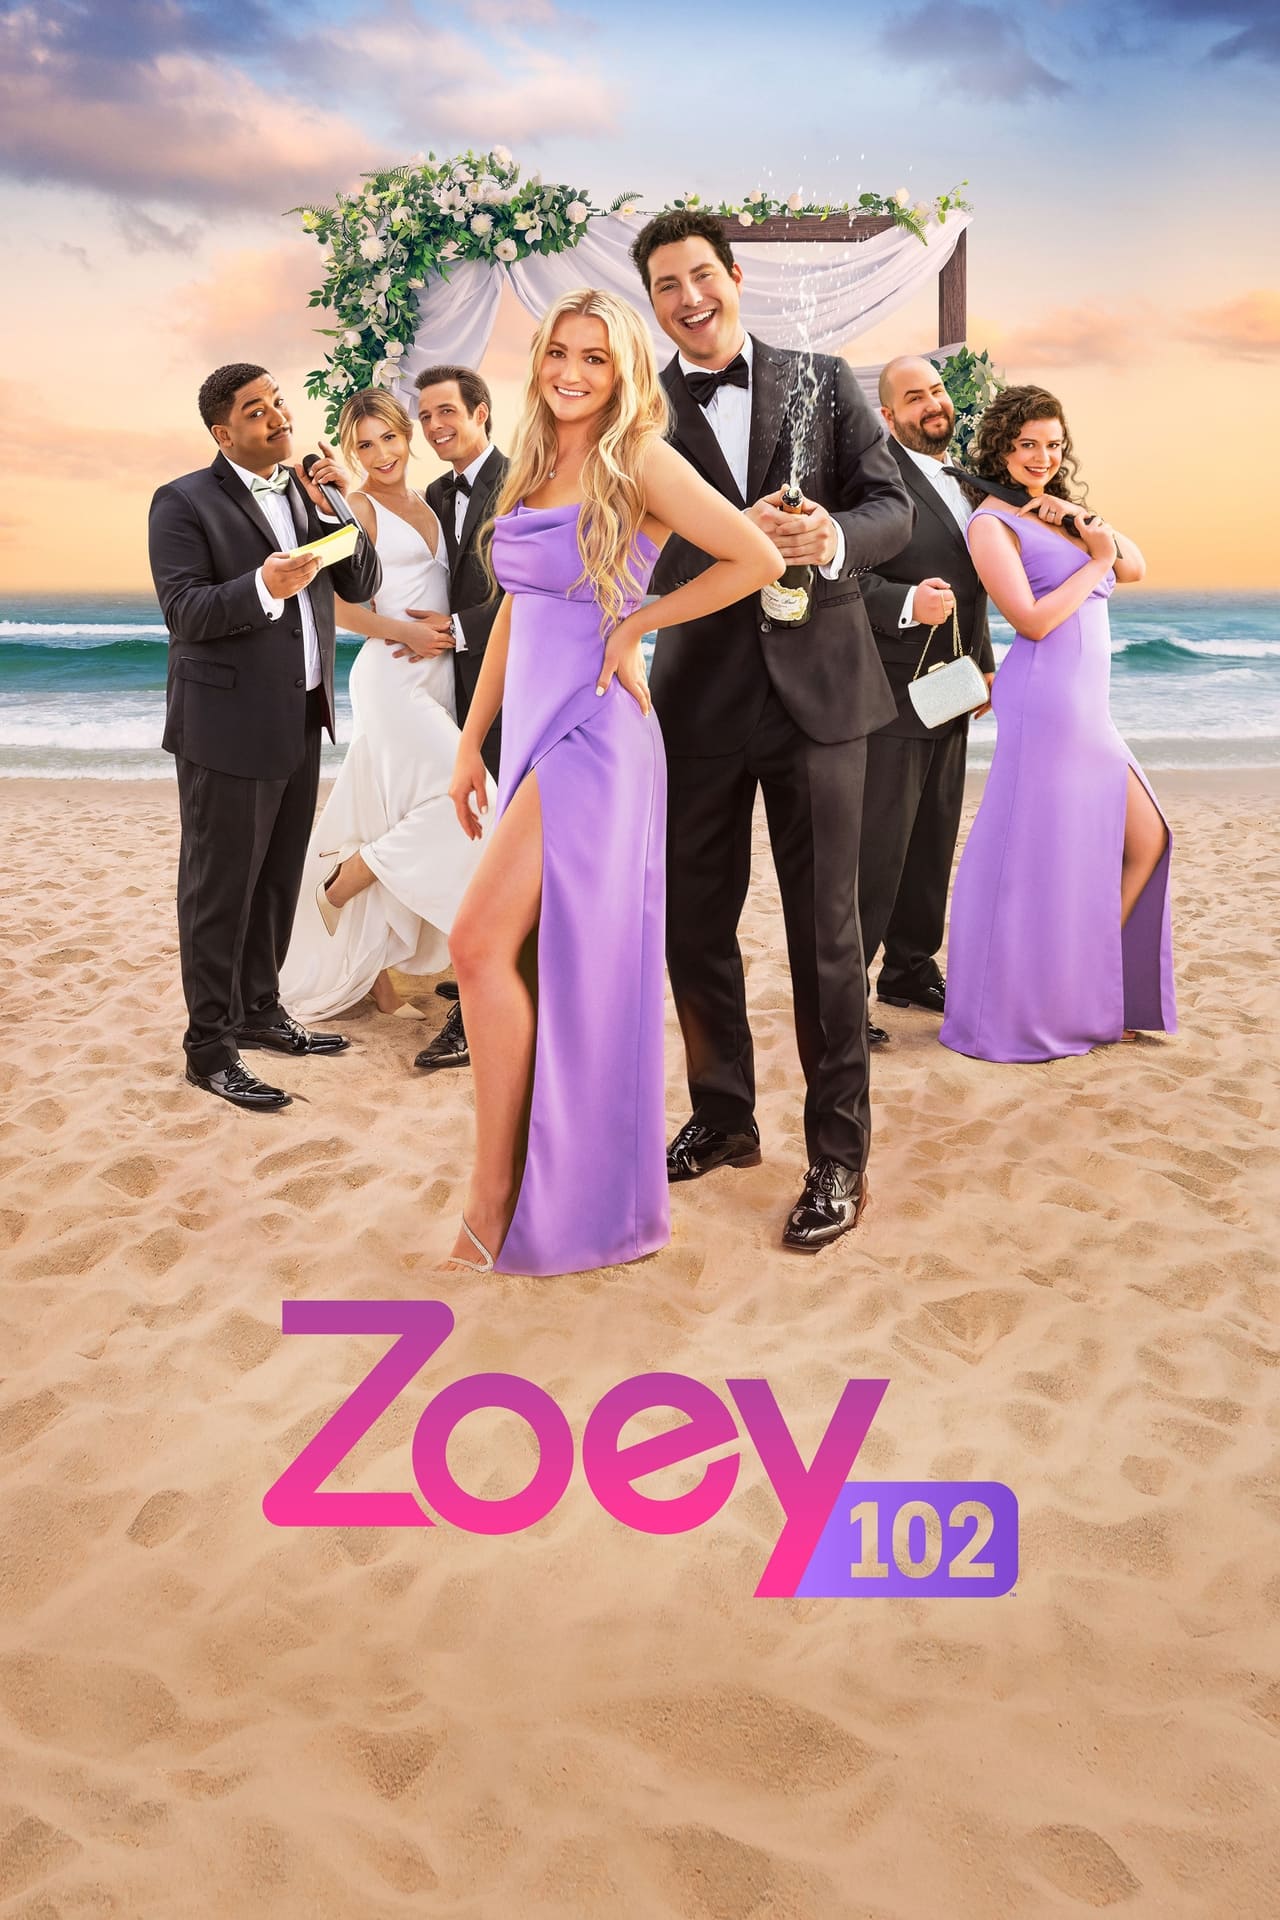 Zoey 102: O Casamento Dublado Online